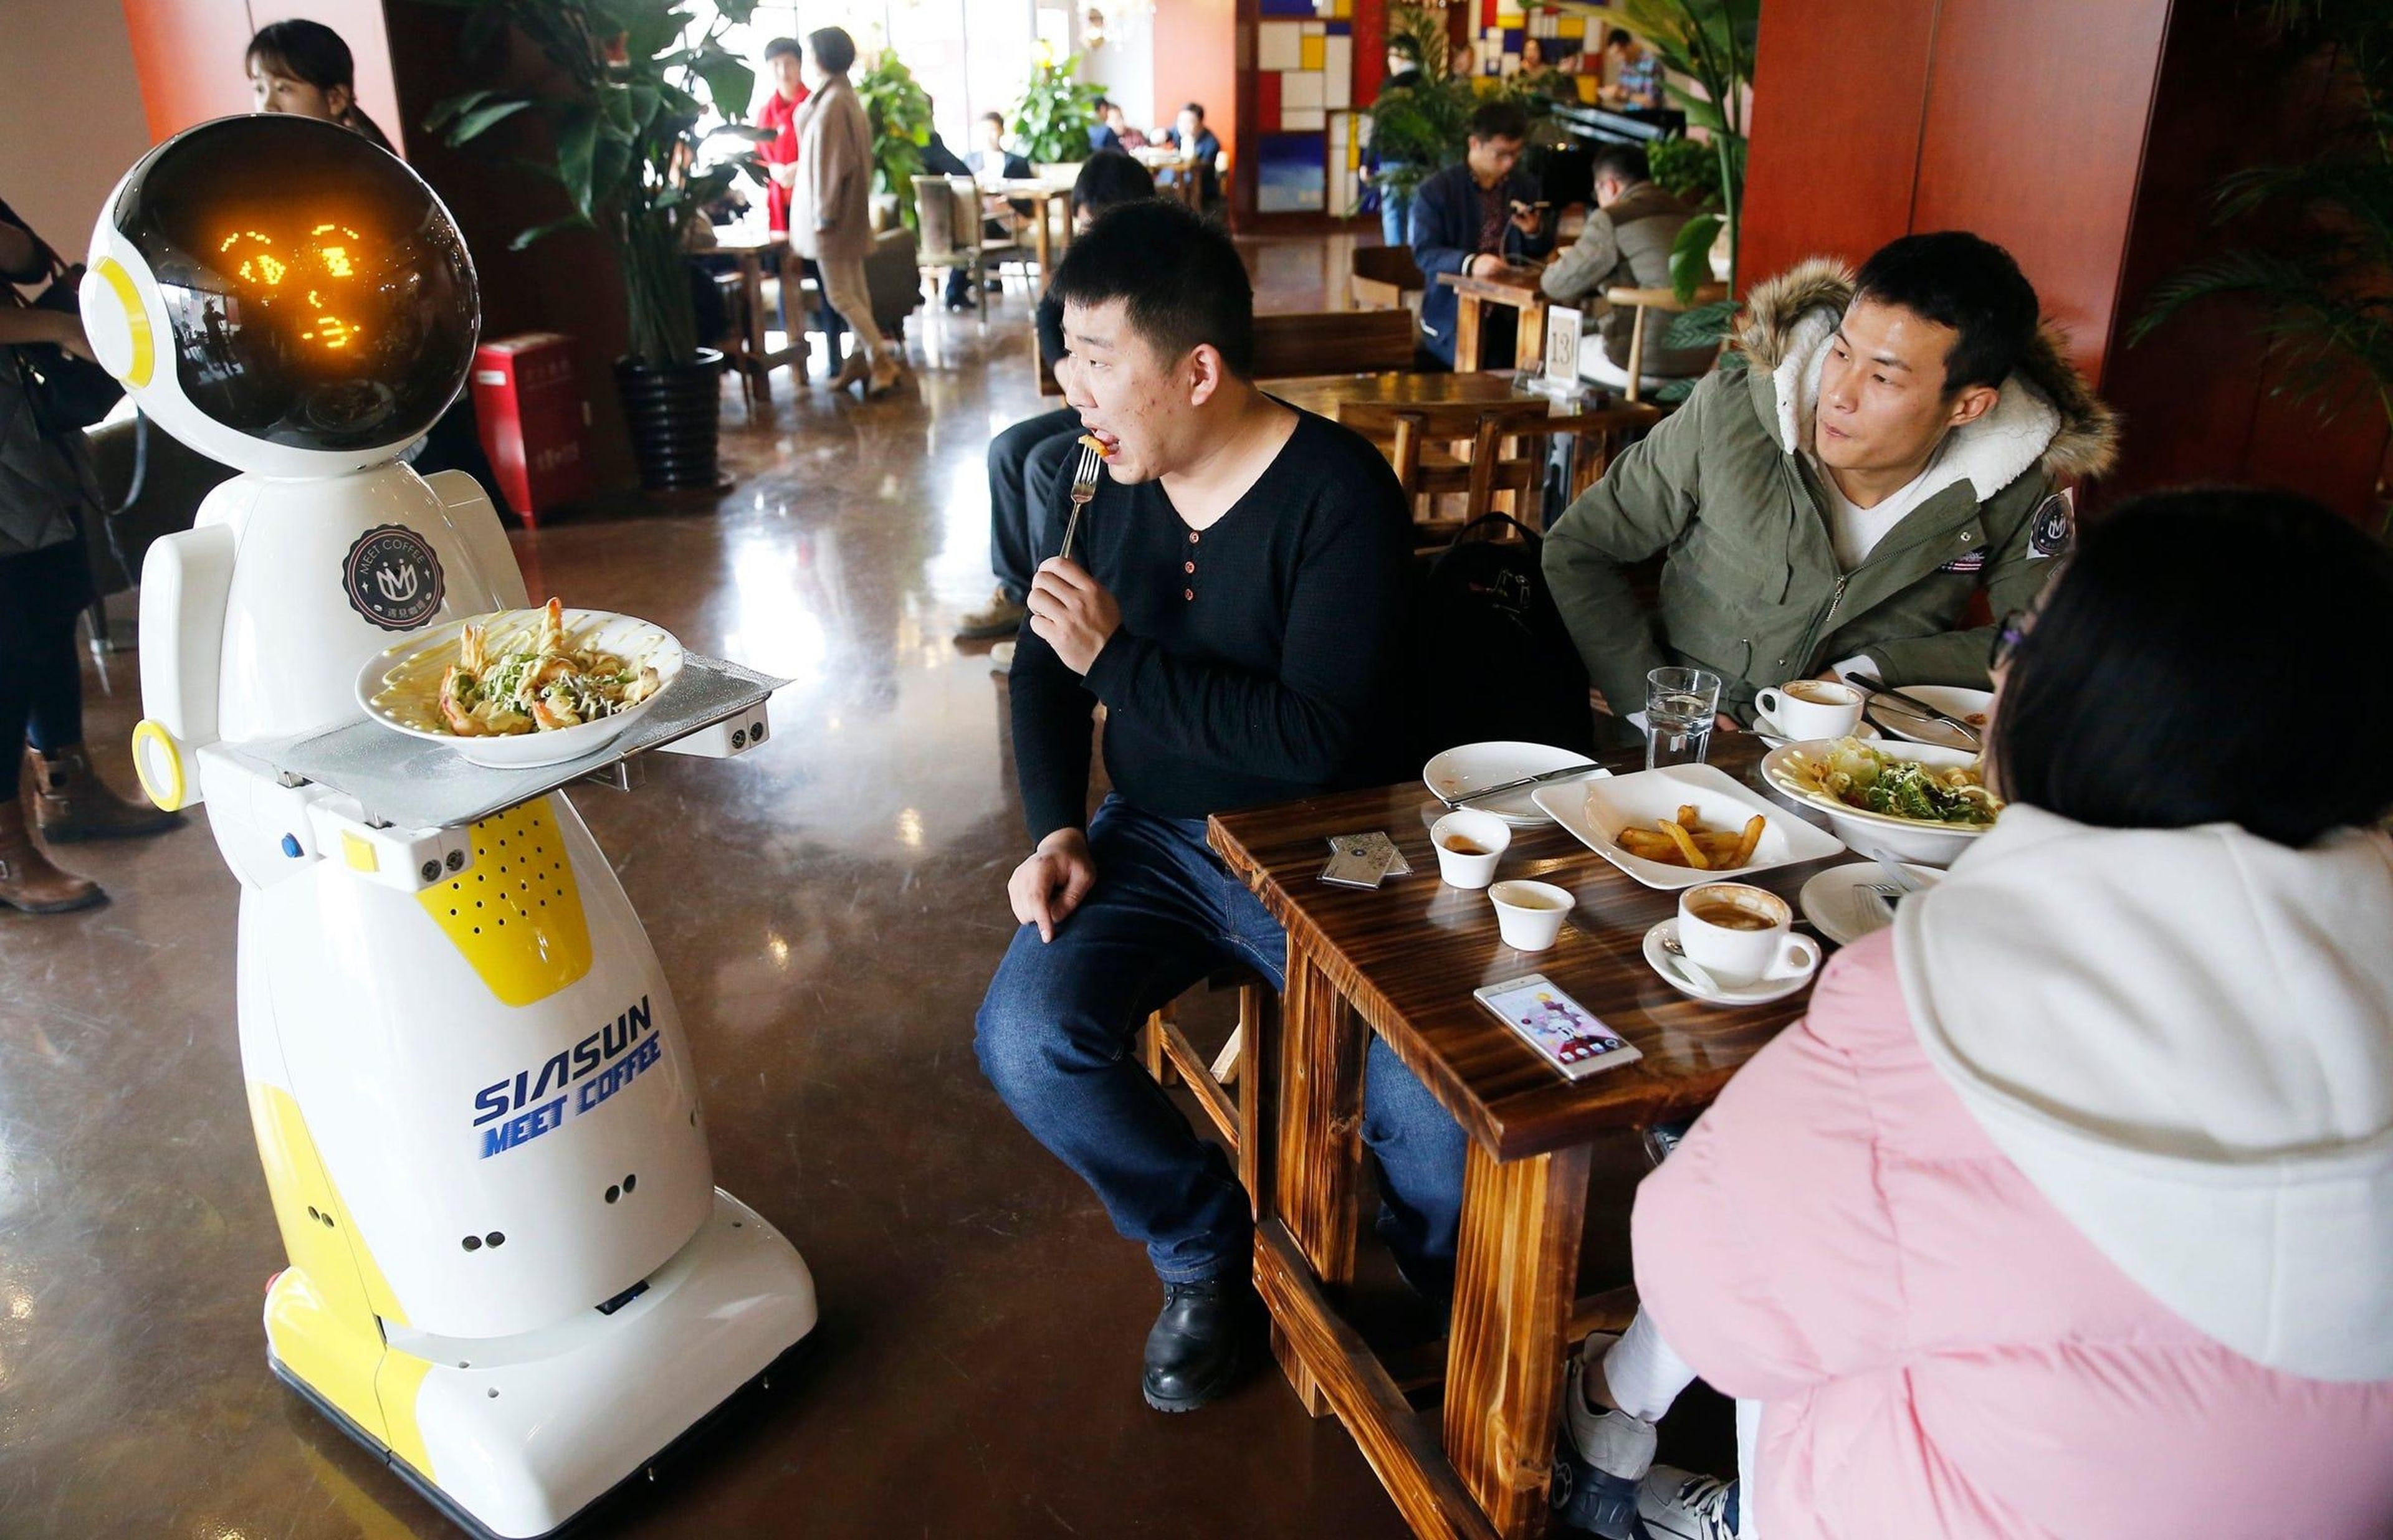 Hay muchos restaurantes en todo el mundo que utilizan robots camareros, incluyendo este en Qingdao, China. Tete entrega la comida a los clientes y puede comunicarse con más de 200 palabras.